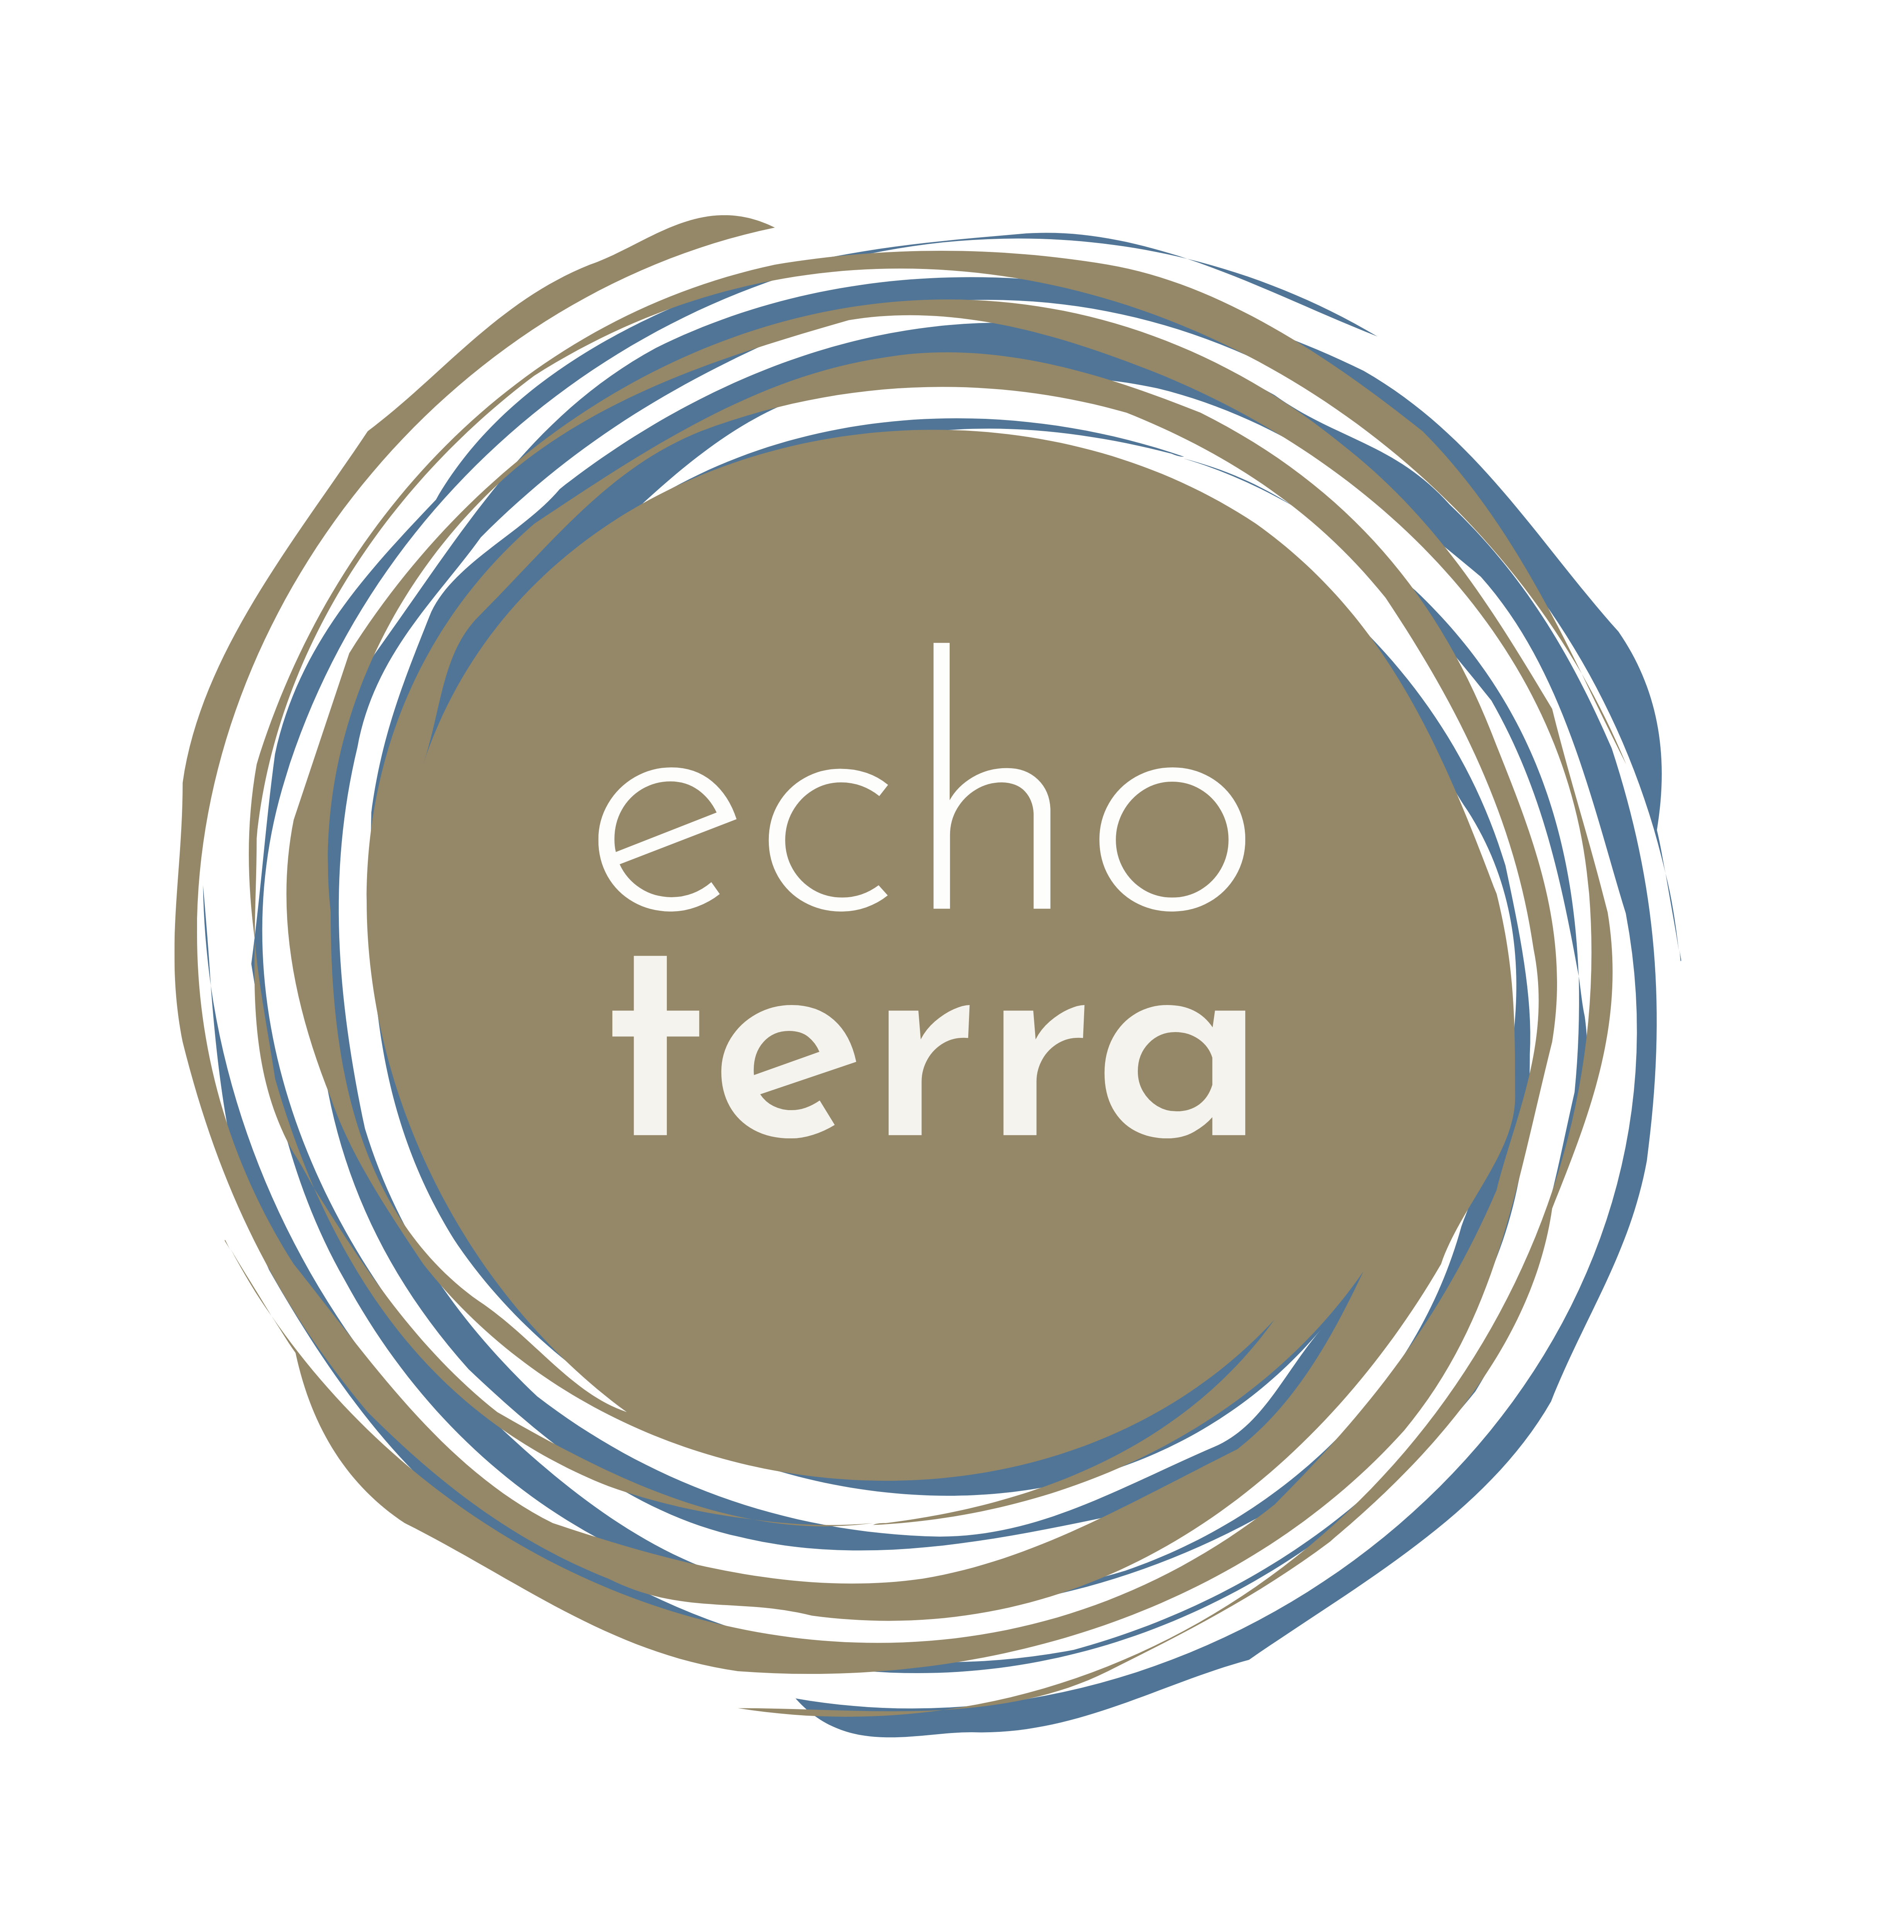 ECHO TERRA